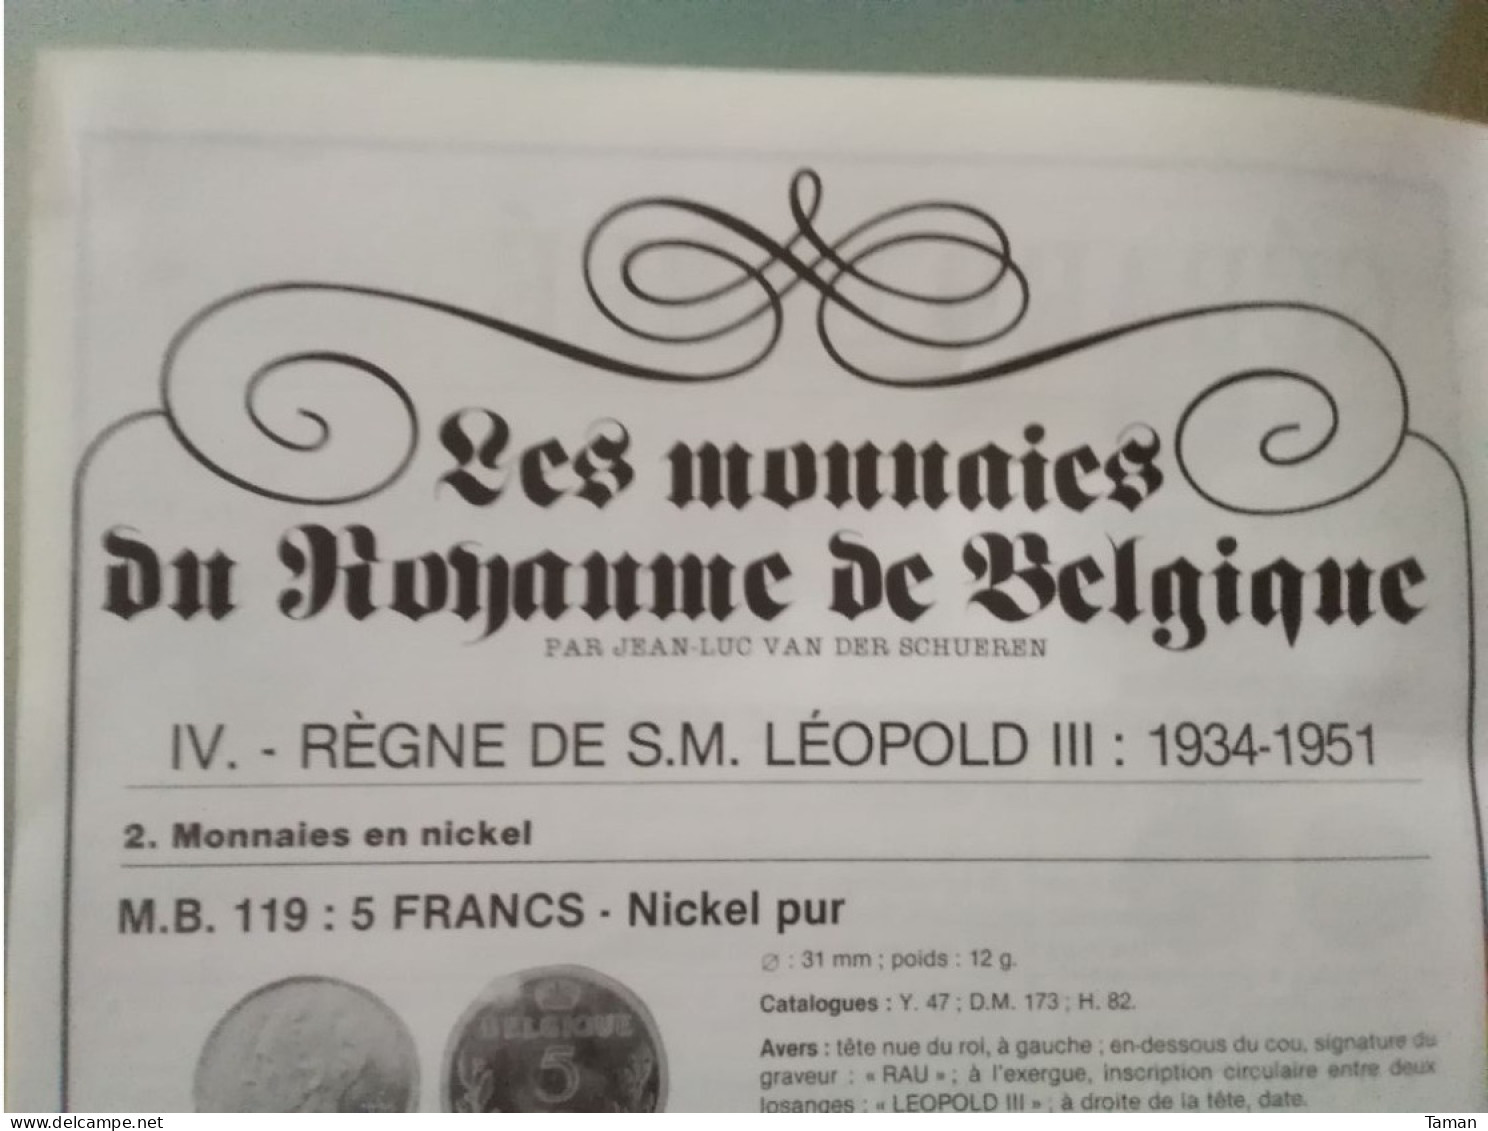 Numismatique & change - Duché de Lorraine - les sous de Dupuis - Rouble - Thèmes Papier monnaie - Belgique